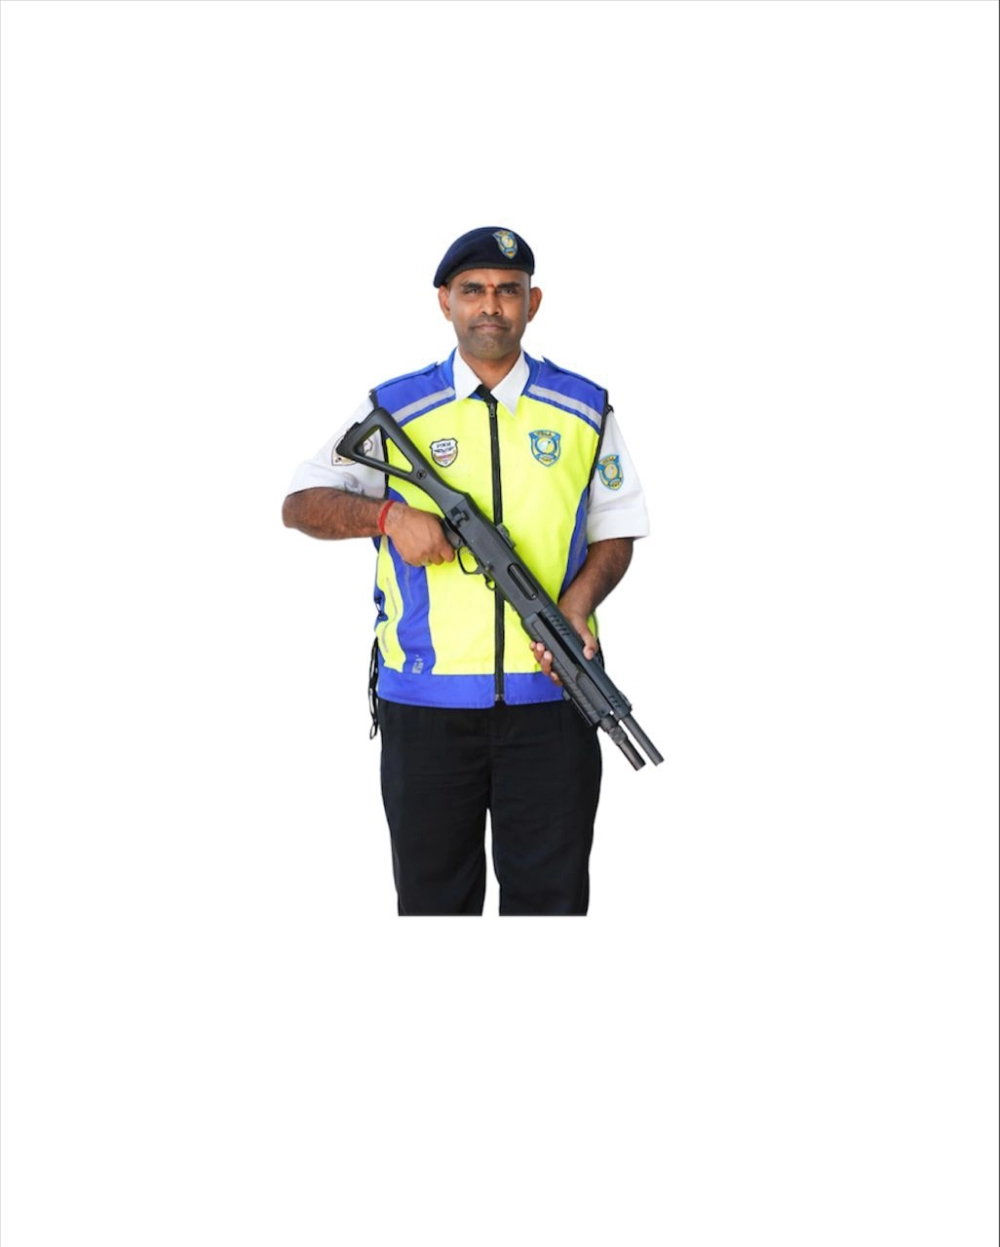 Armed Guard On Duty